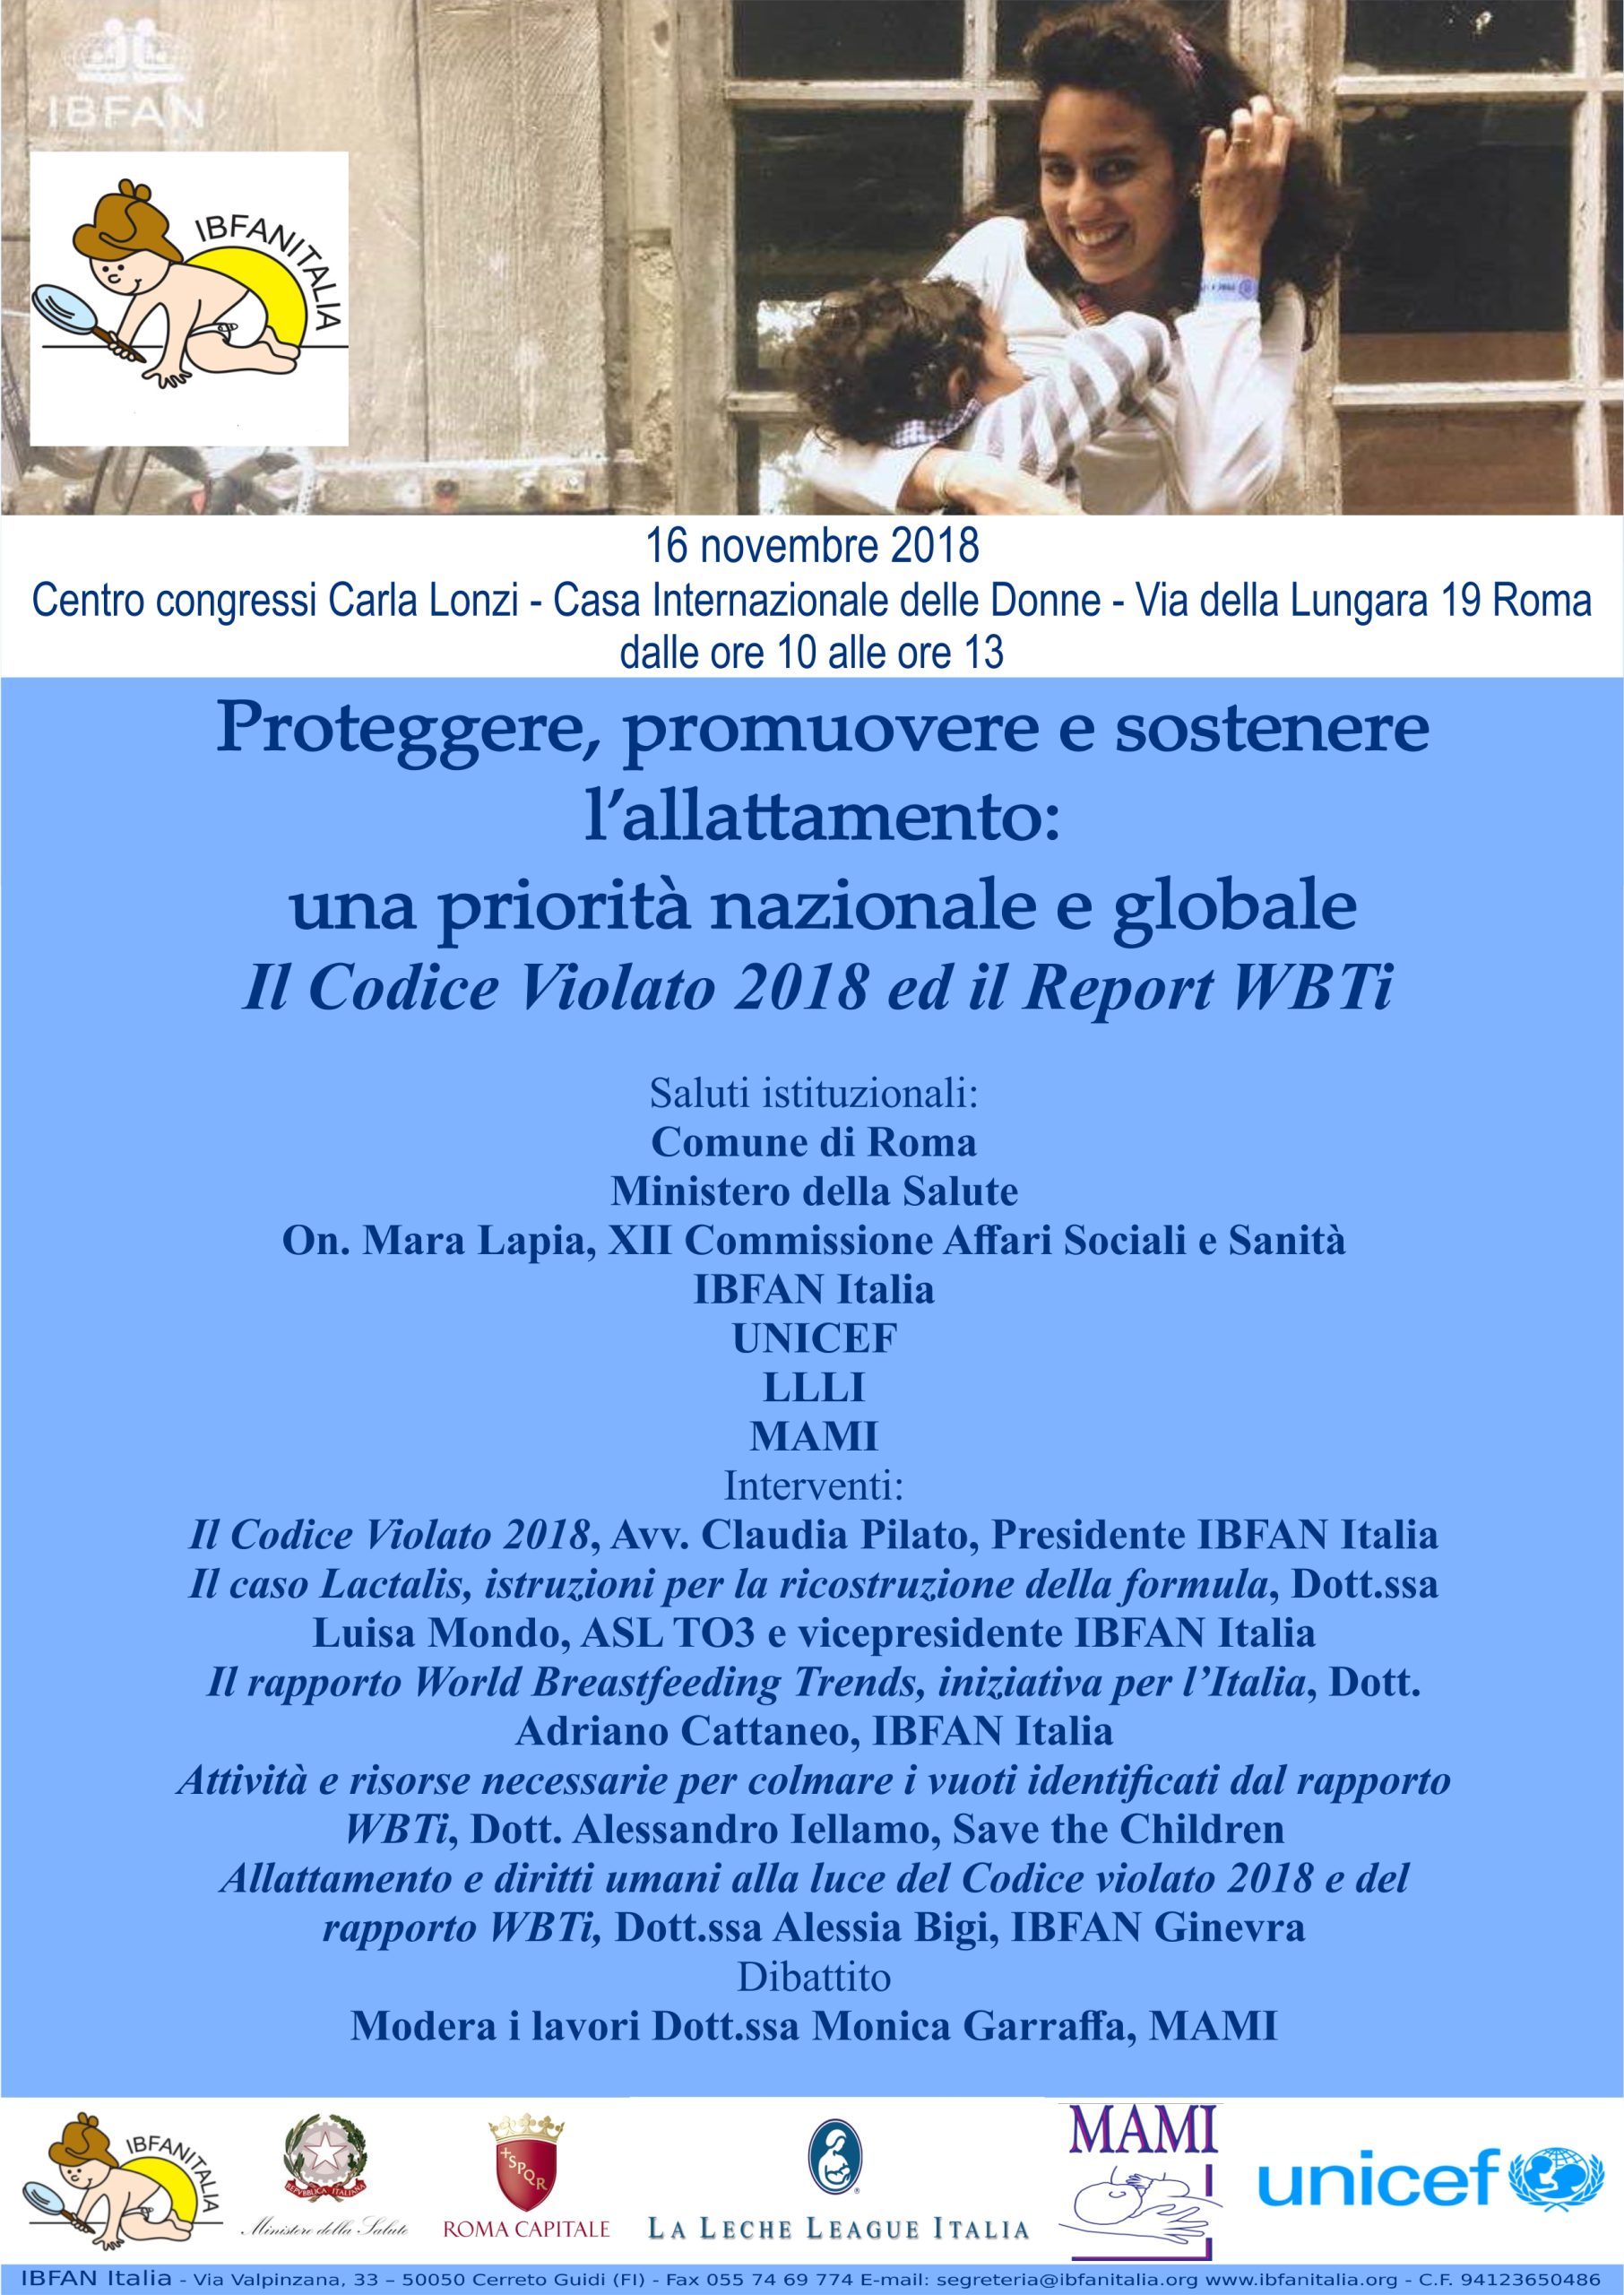 Presentazione Il Codice Violato 2018 e WBTi – Roma, 16 novembre 2018